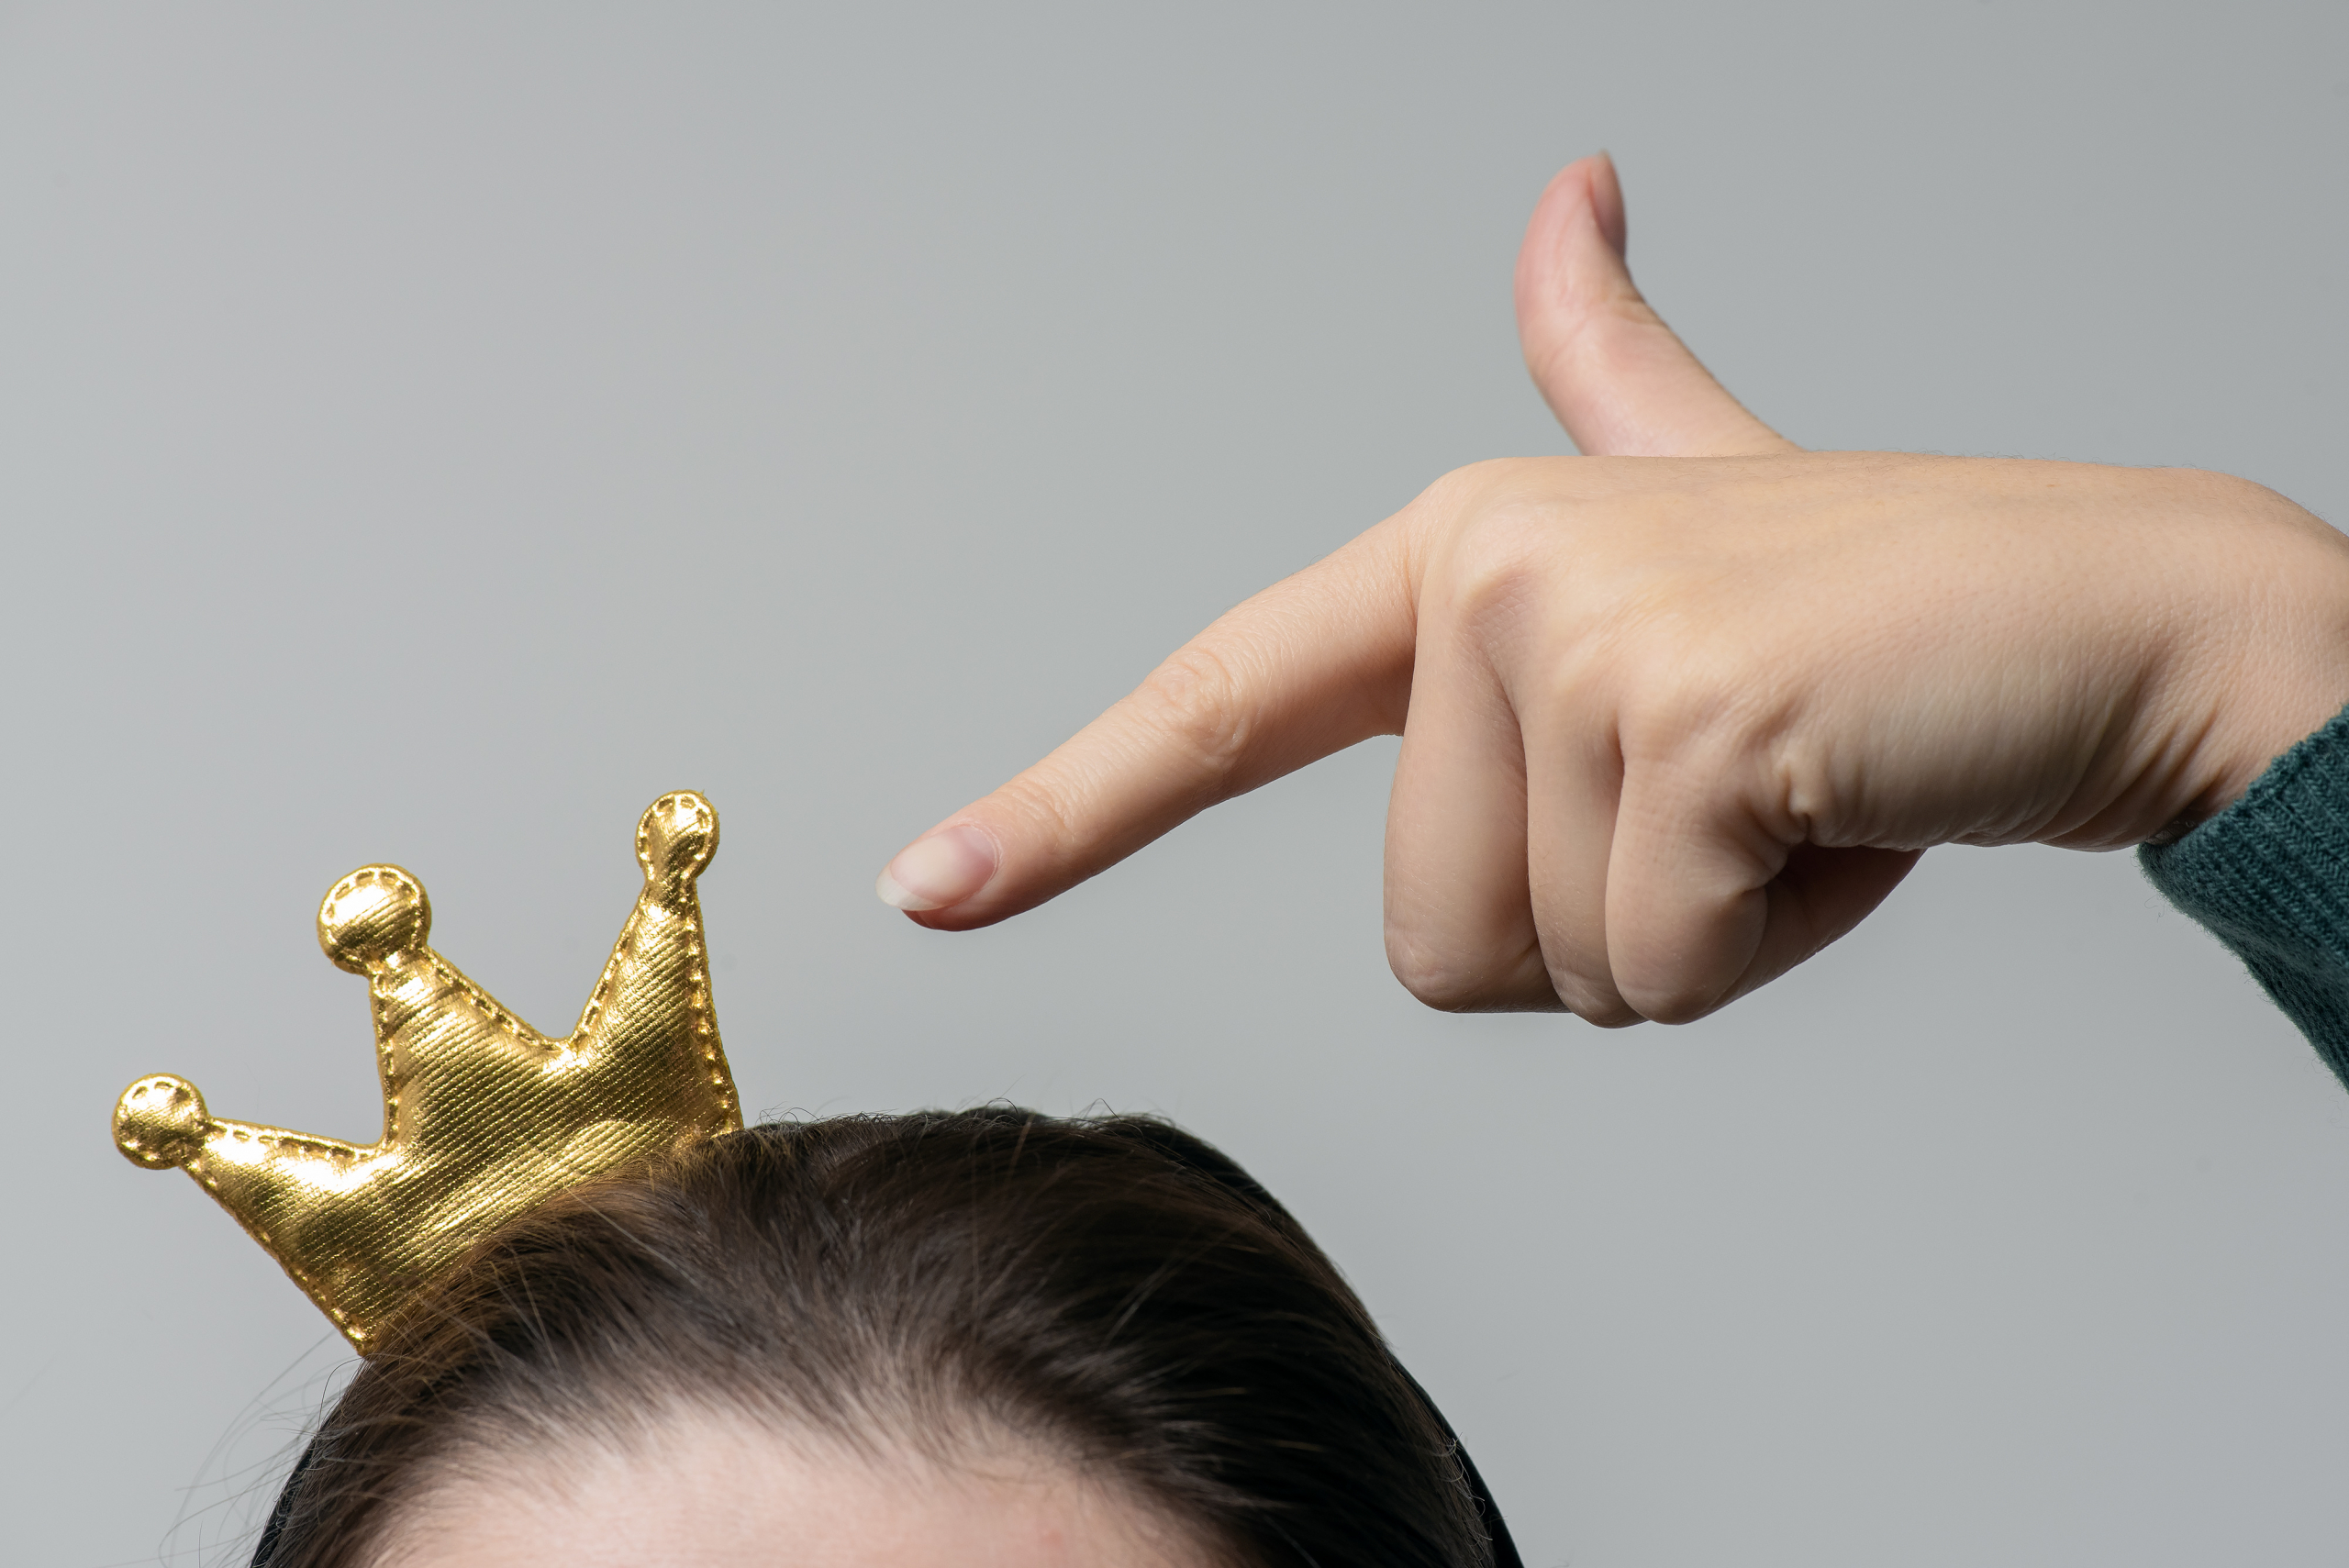 Frau zeigt mit ihrem Finger auf eine kleine Krone auf ihren Kopf